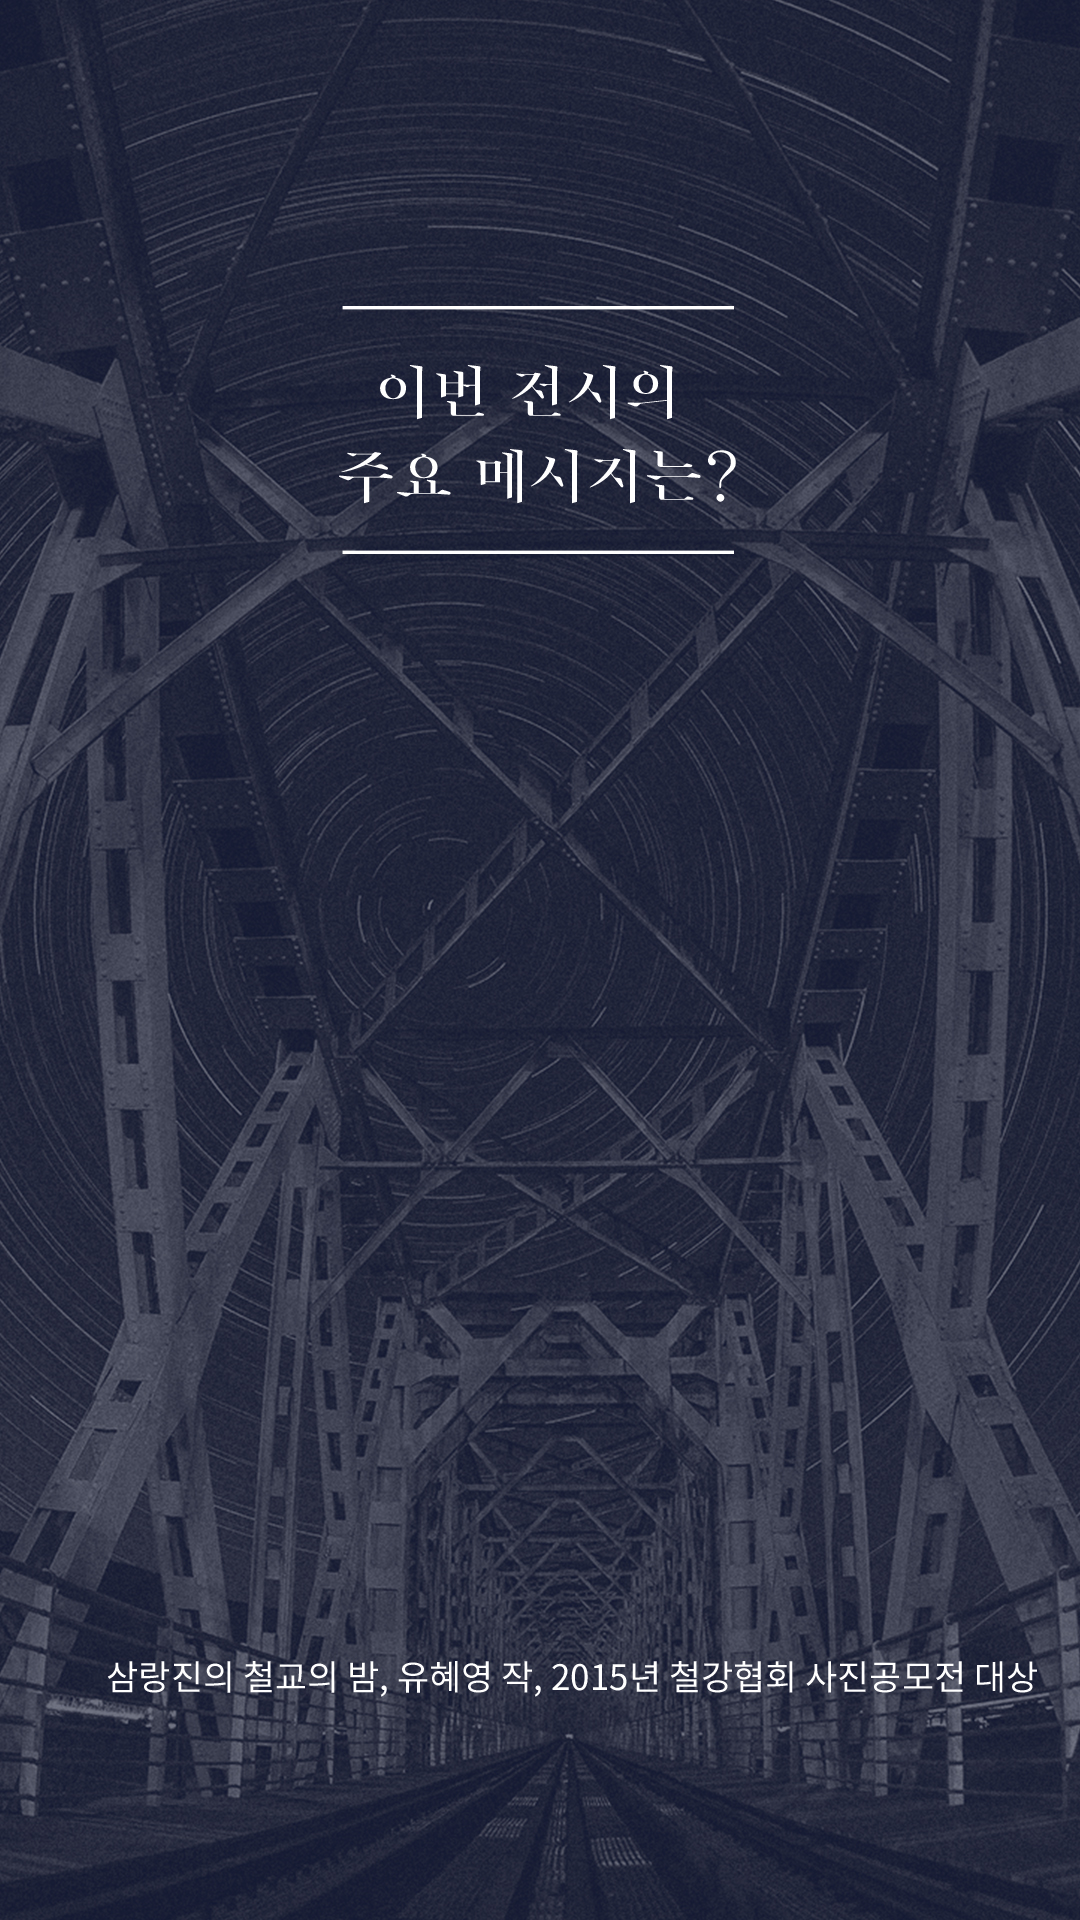 이번 전시의 주요 메시지는? - 삼랑진의 철교의 밤, 유혜영 작, 2015년 철강협회 사진공모전 대상 이미지